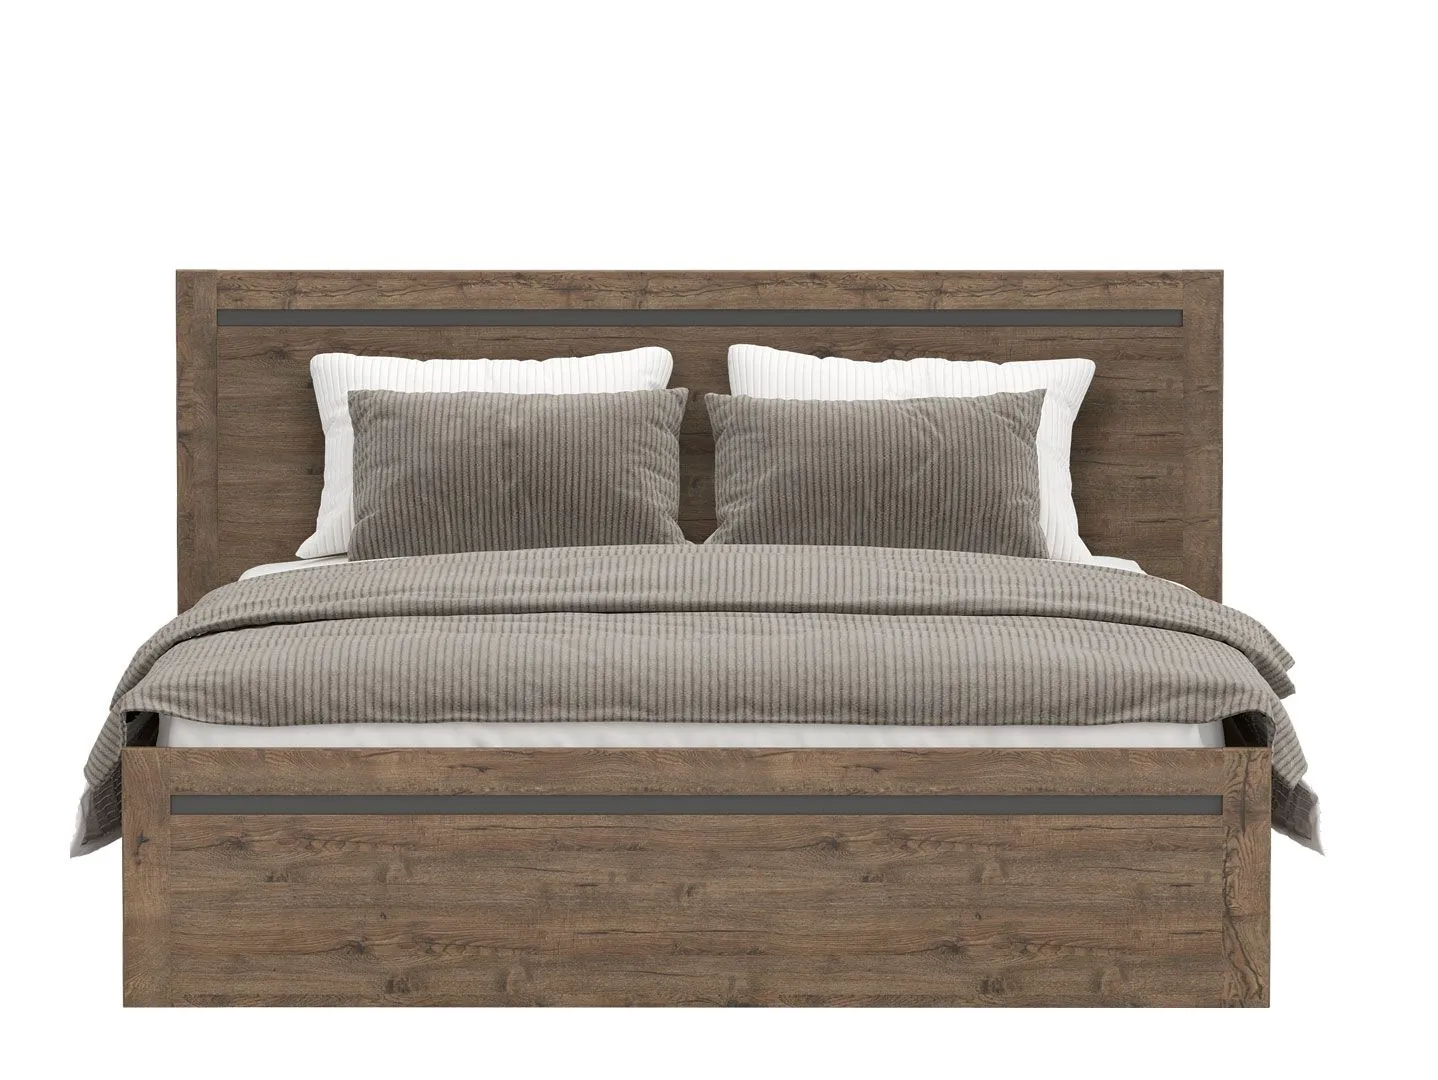 Спальня | Кровати | КАДА Кровать LOZ160х200 с подъемным механизмом Мебель ☆ IDEA в Севастополе| BRW, Брест anons